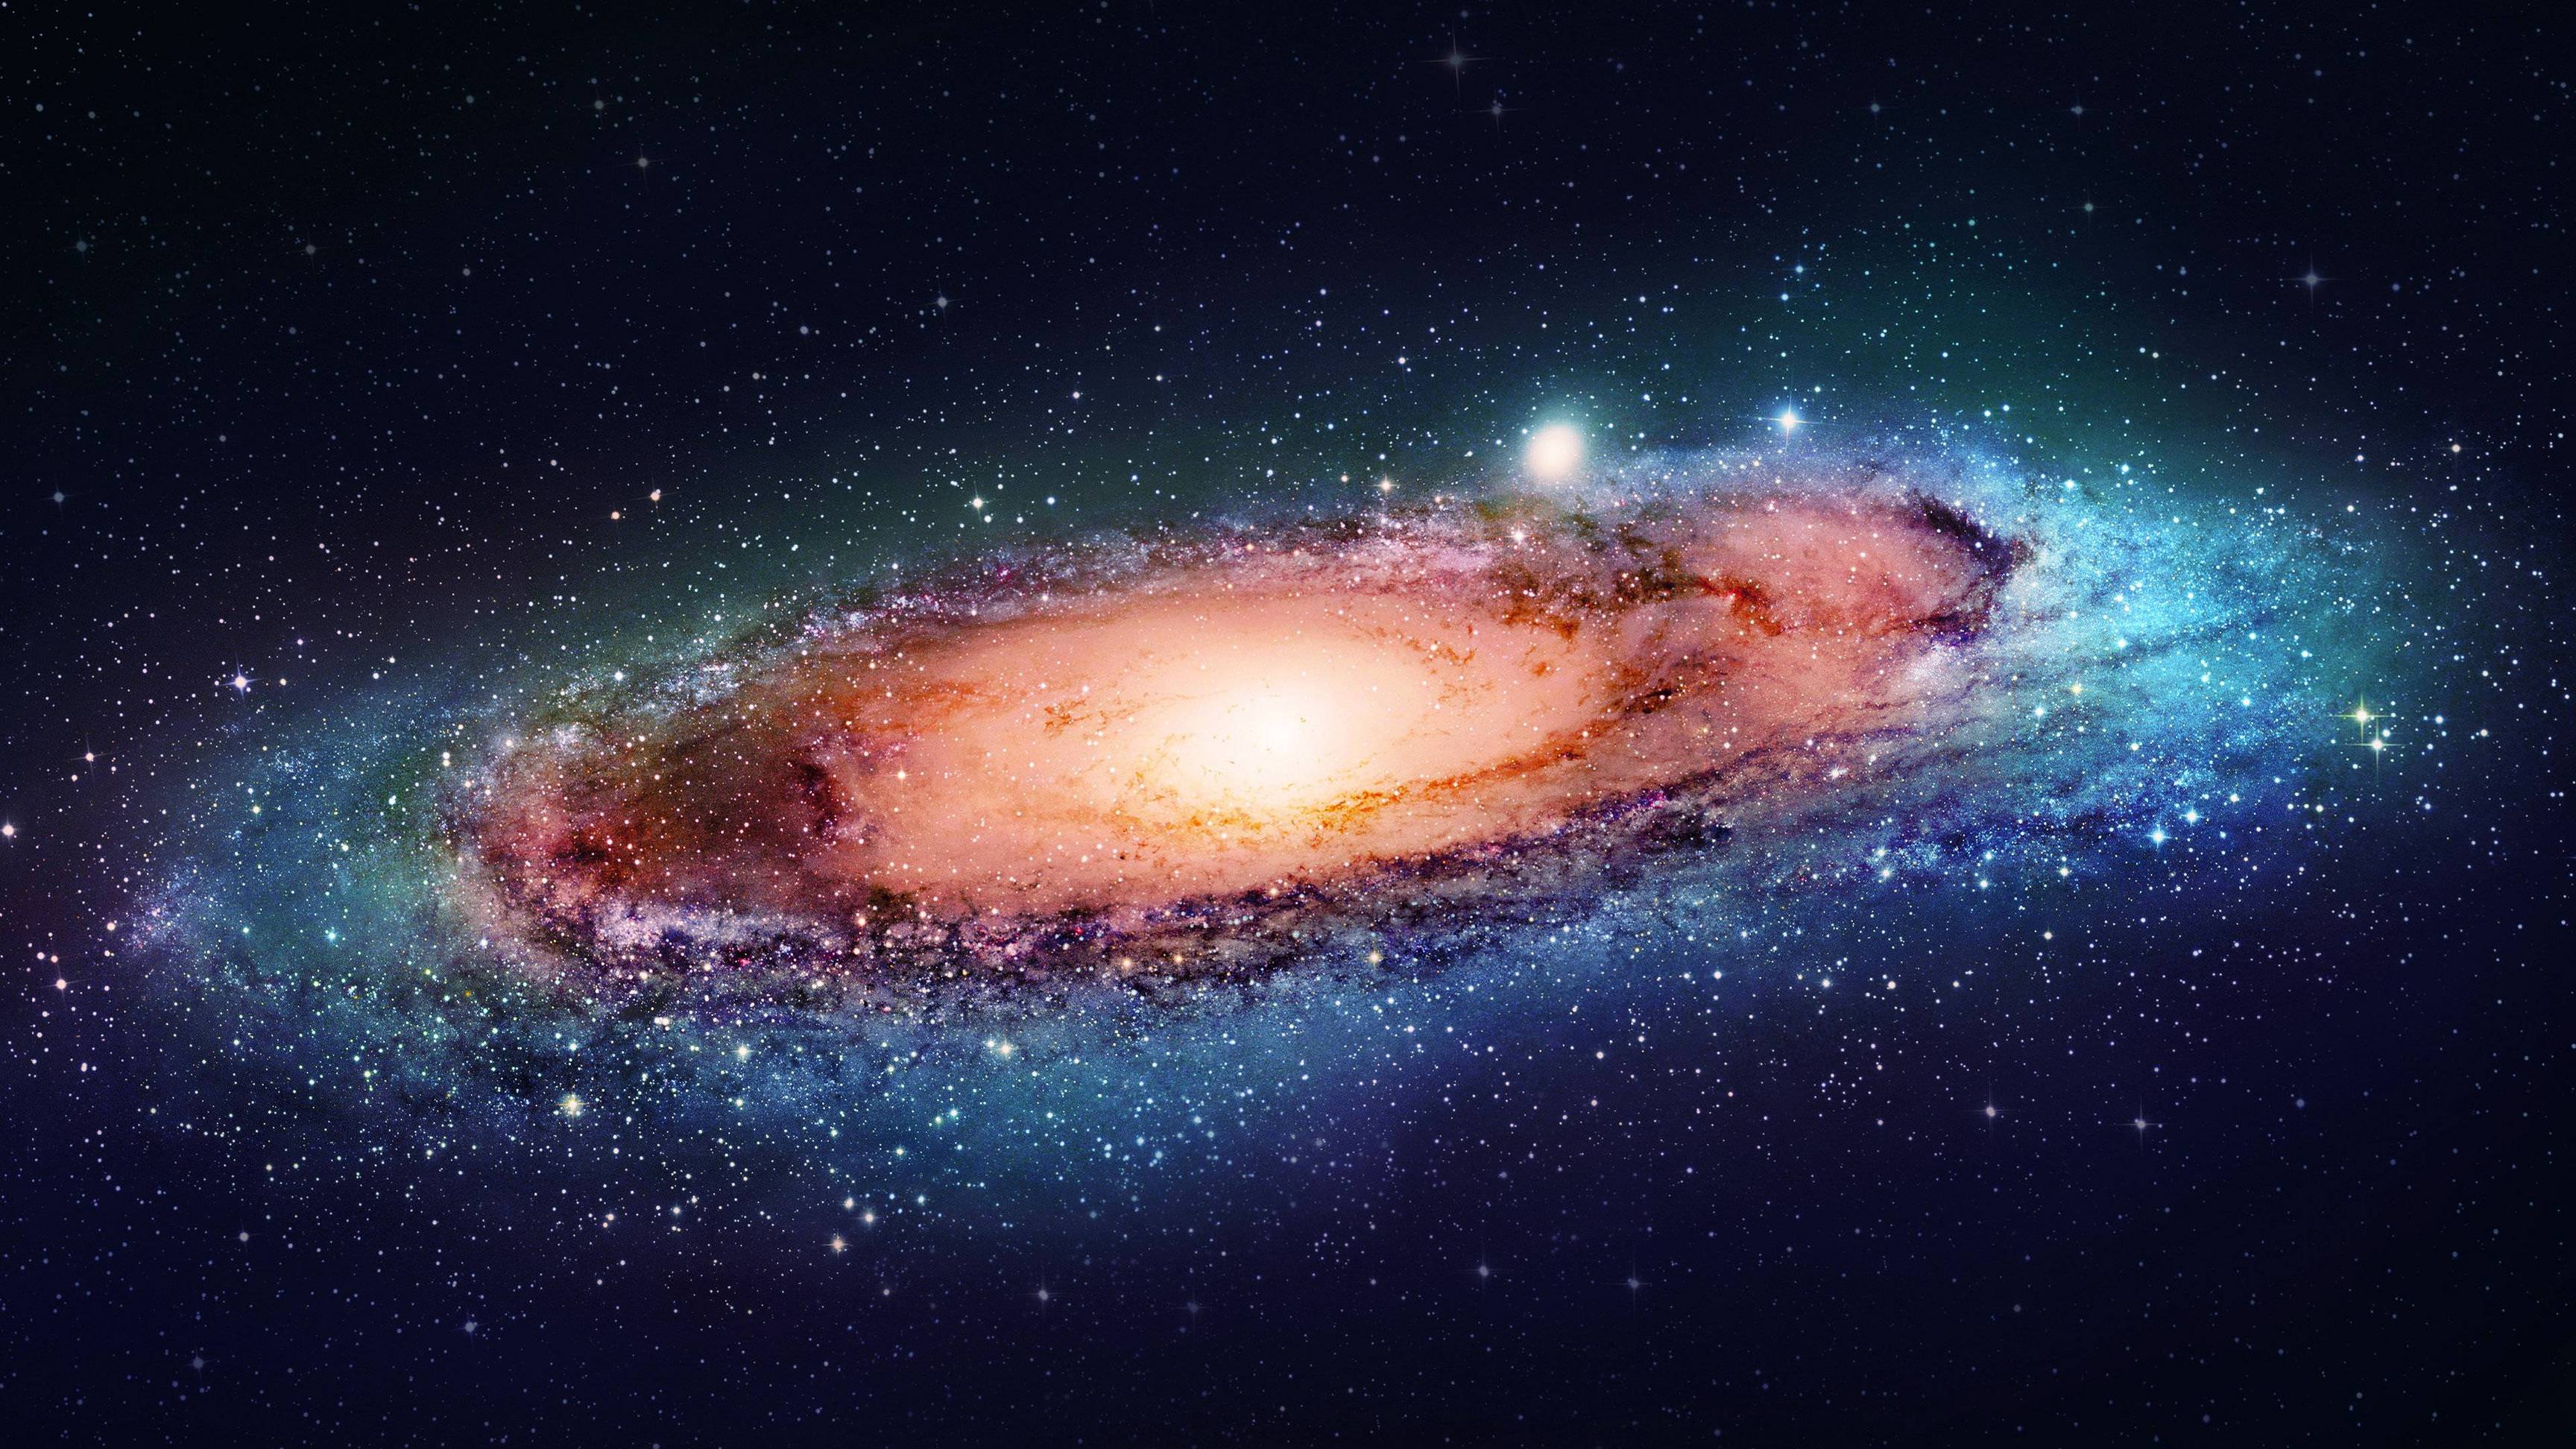 Thiên hà: Thiên hà tuyệt đẹp với vô vàn ngôi sao và cụm sao đầy màu sắc và sự kiện thiên văn đầy thú vị. Hãy tưởng tượng bạn đang ngắm nhìn vũ trụ trong vô tận, một cảm giác thật kinh ngạc và thú vị.